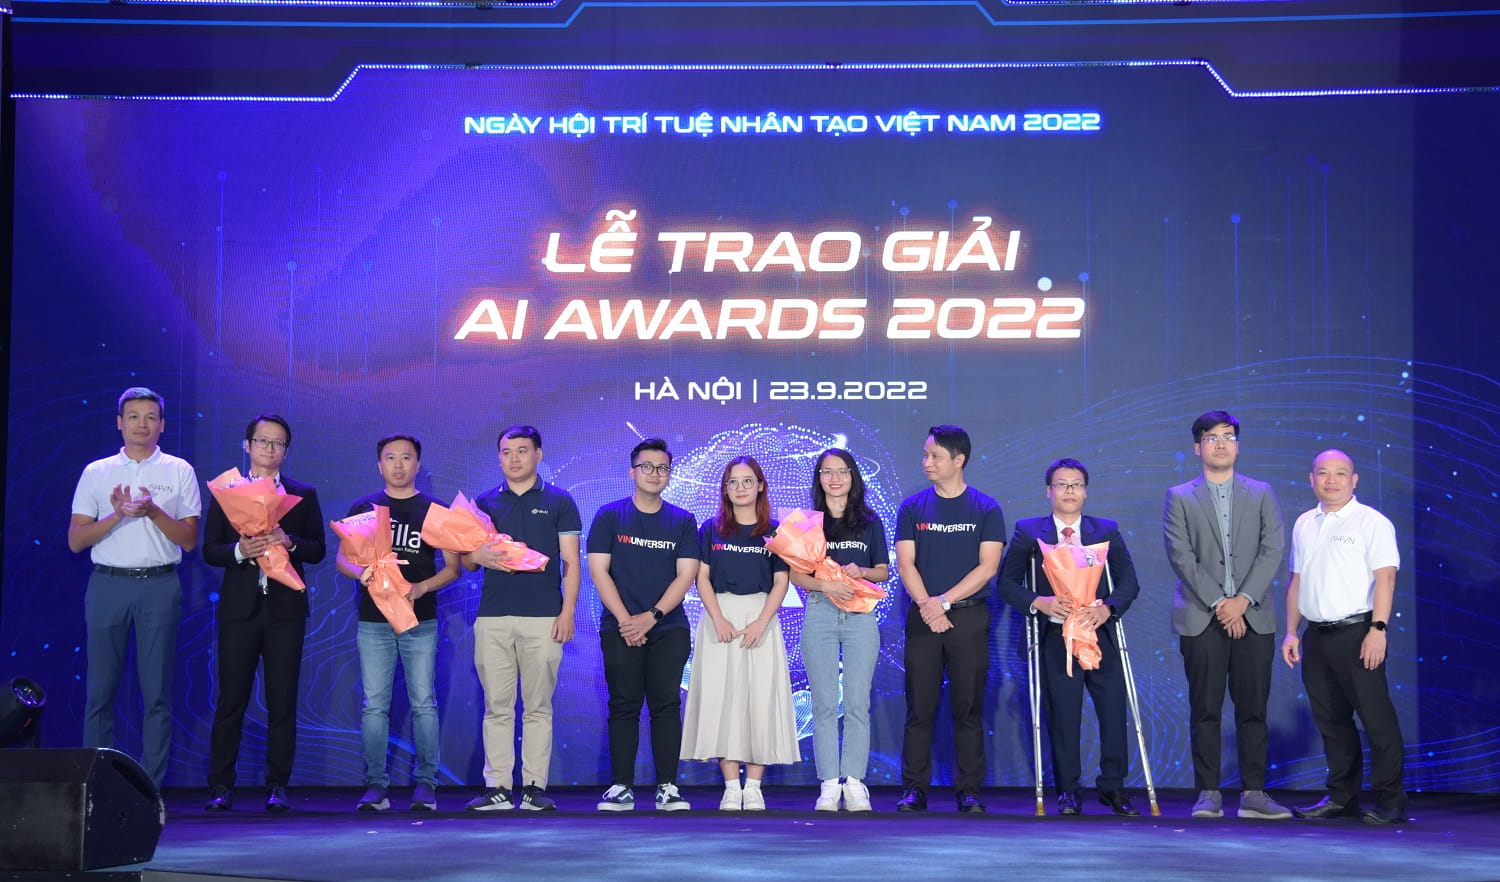 Lê trao giải AI Awards 2022 trong khuôn khổ sự kiện AI4VN